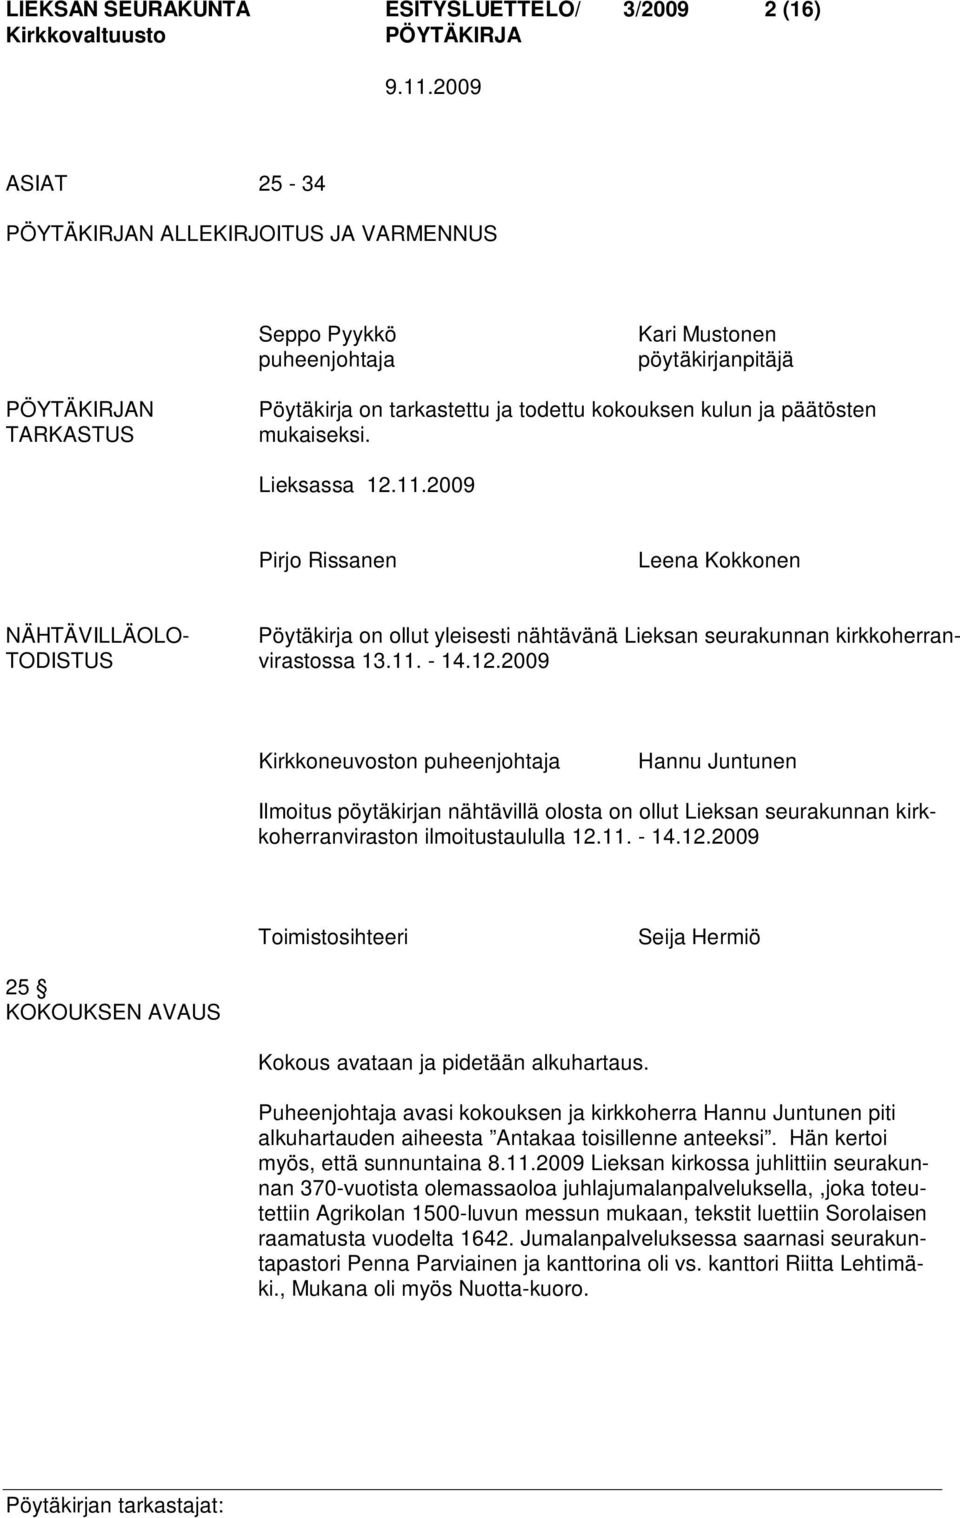 2009 Pirjo Rissanen Leena Kokkonen NÄHTÄVILLÄOLO- Pöytäkirja on ollut yleisesti nähtävänä Lieksan seurakunnan kirkkoherran- TODISTUS virastossa 13.11. - 14.12.